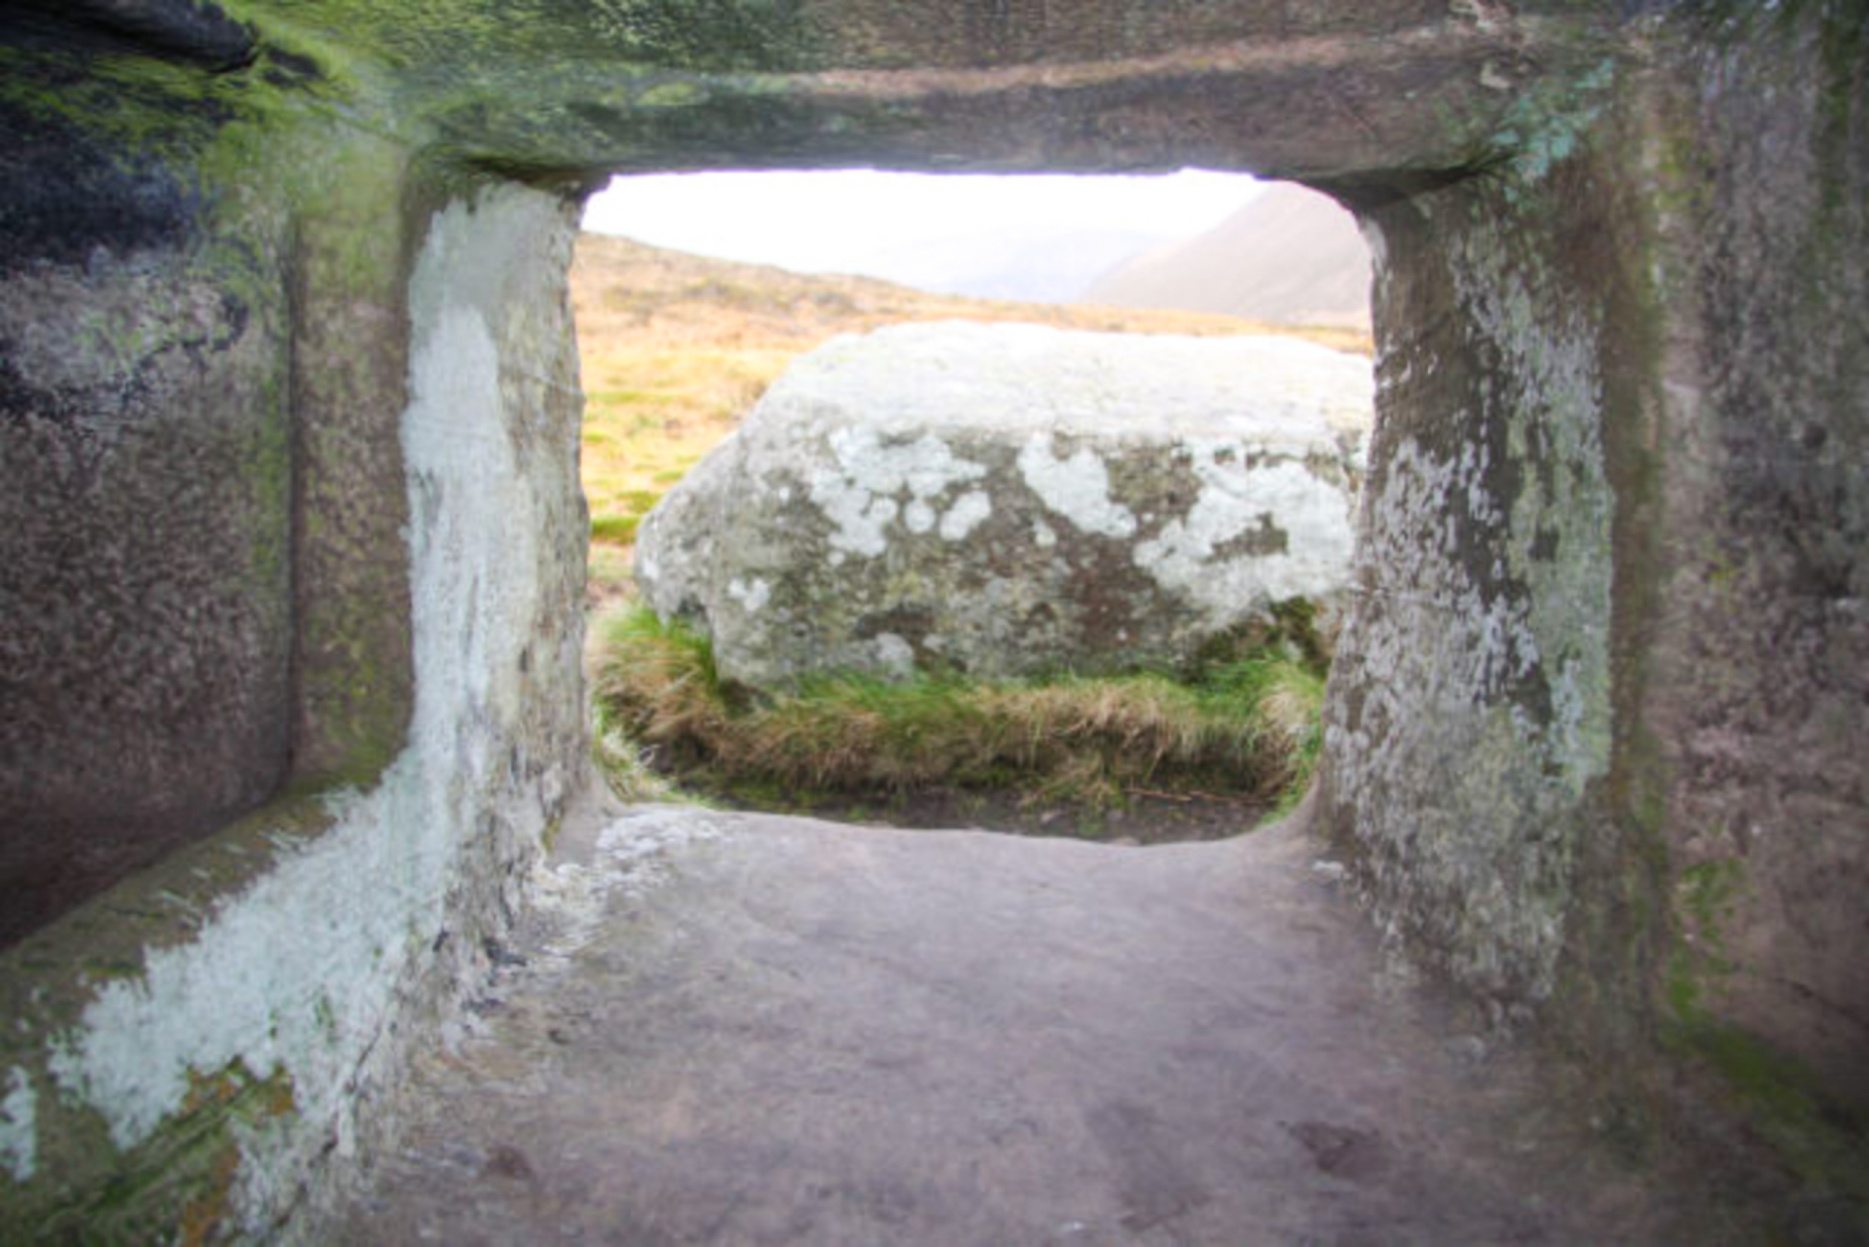 Dentro do Dwarfie Stane A grande pedra do lado de fora já bloqueou a entrada desta tumba neolítica escavada na rocha.